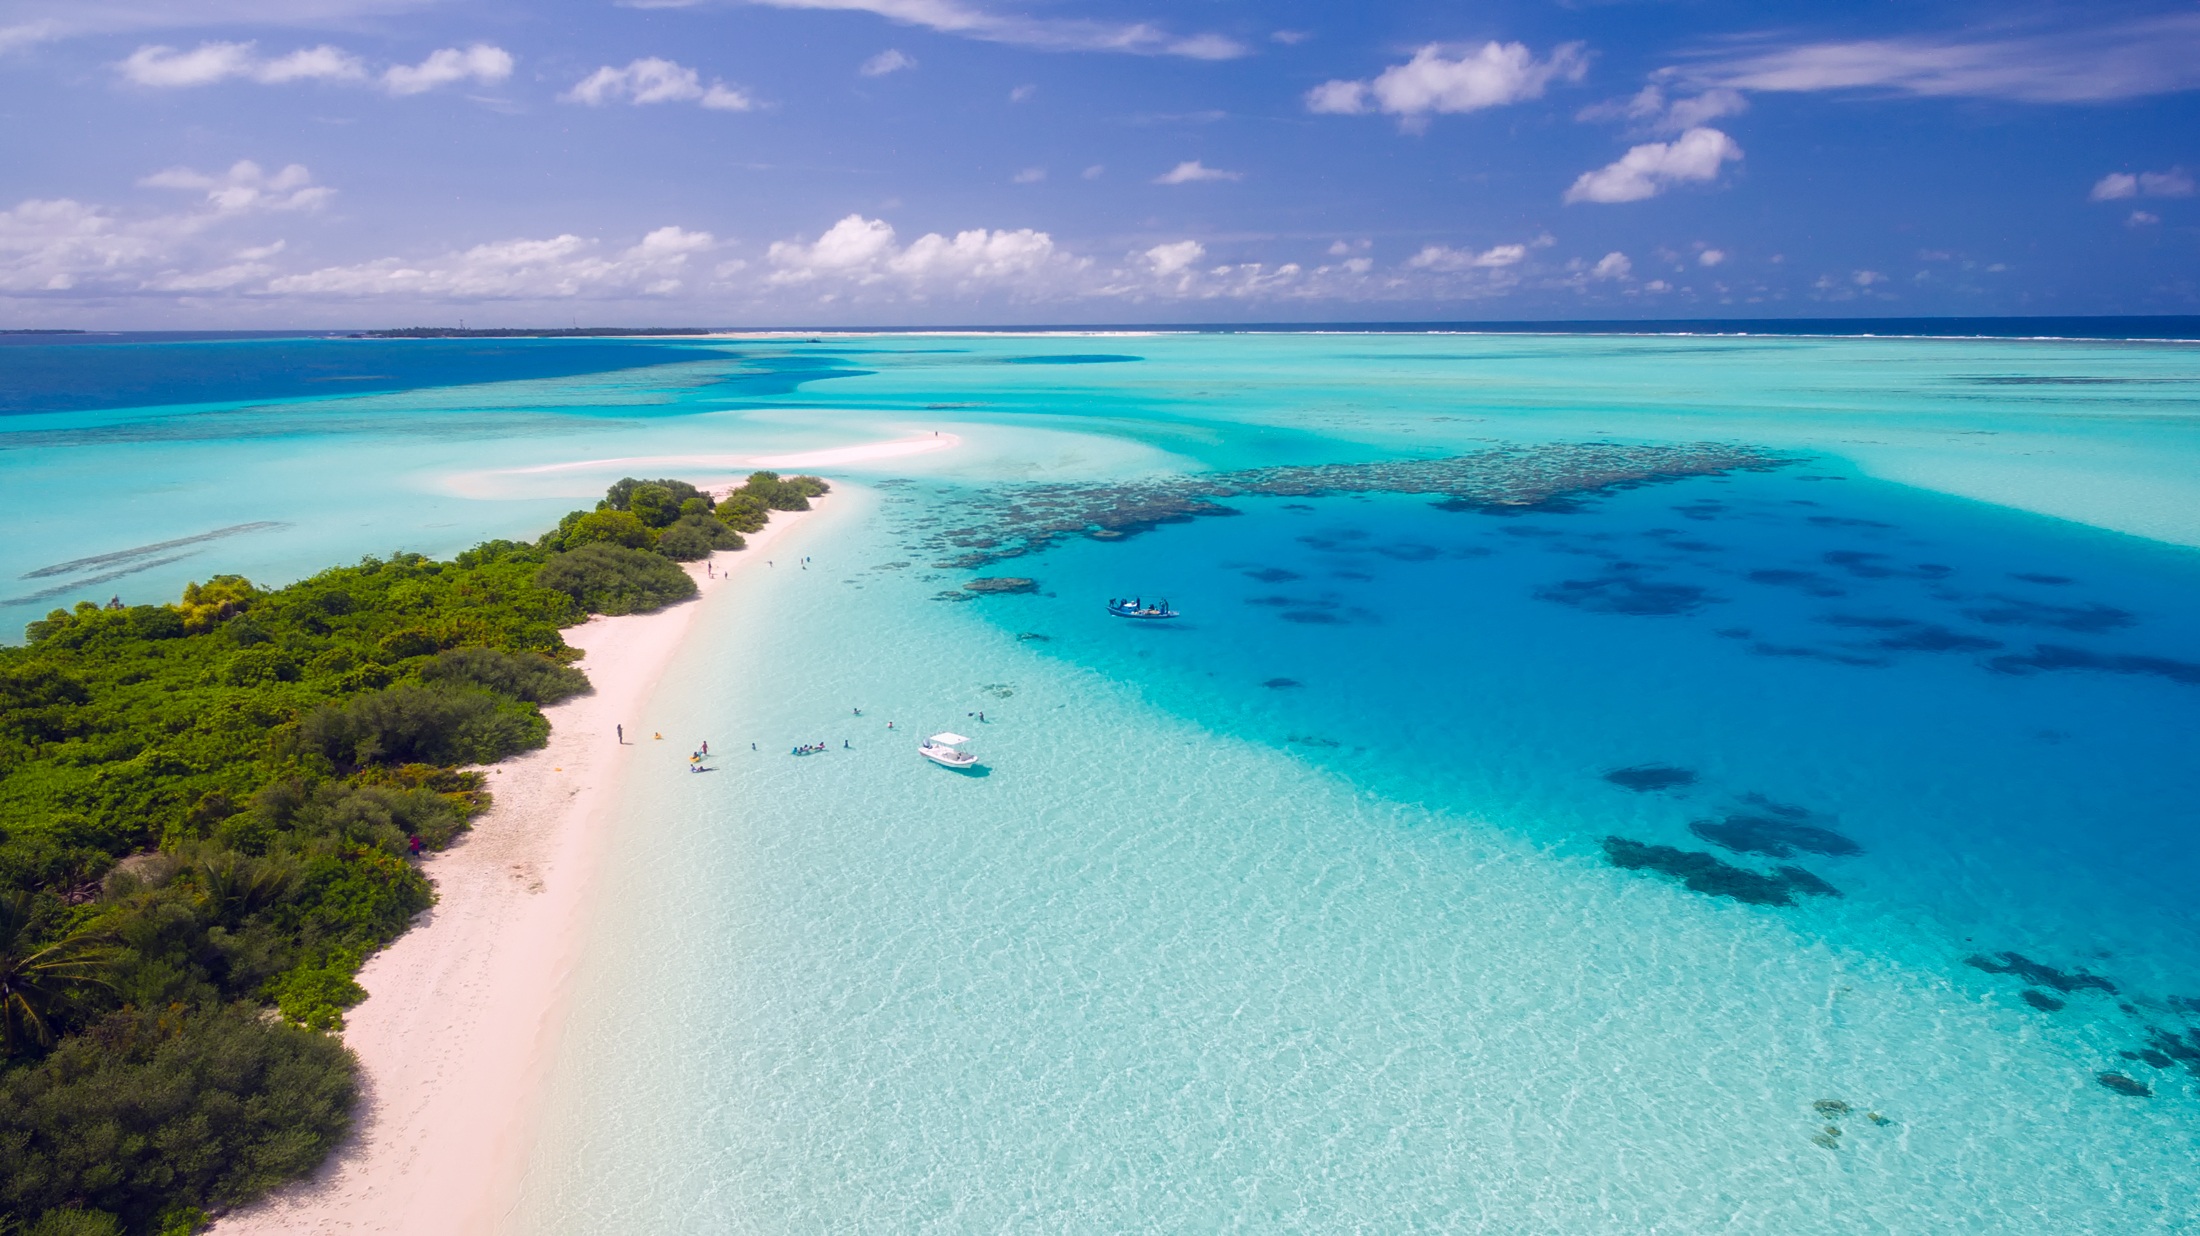 Скачать картинку Природа, Пляж, Остров, Мальдивы, Земля/природа в телефон бесплатно.